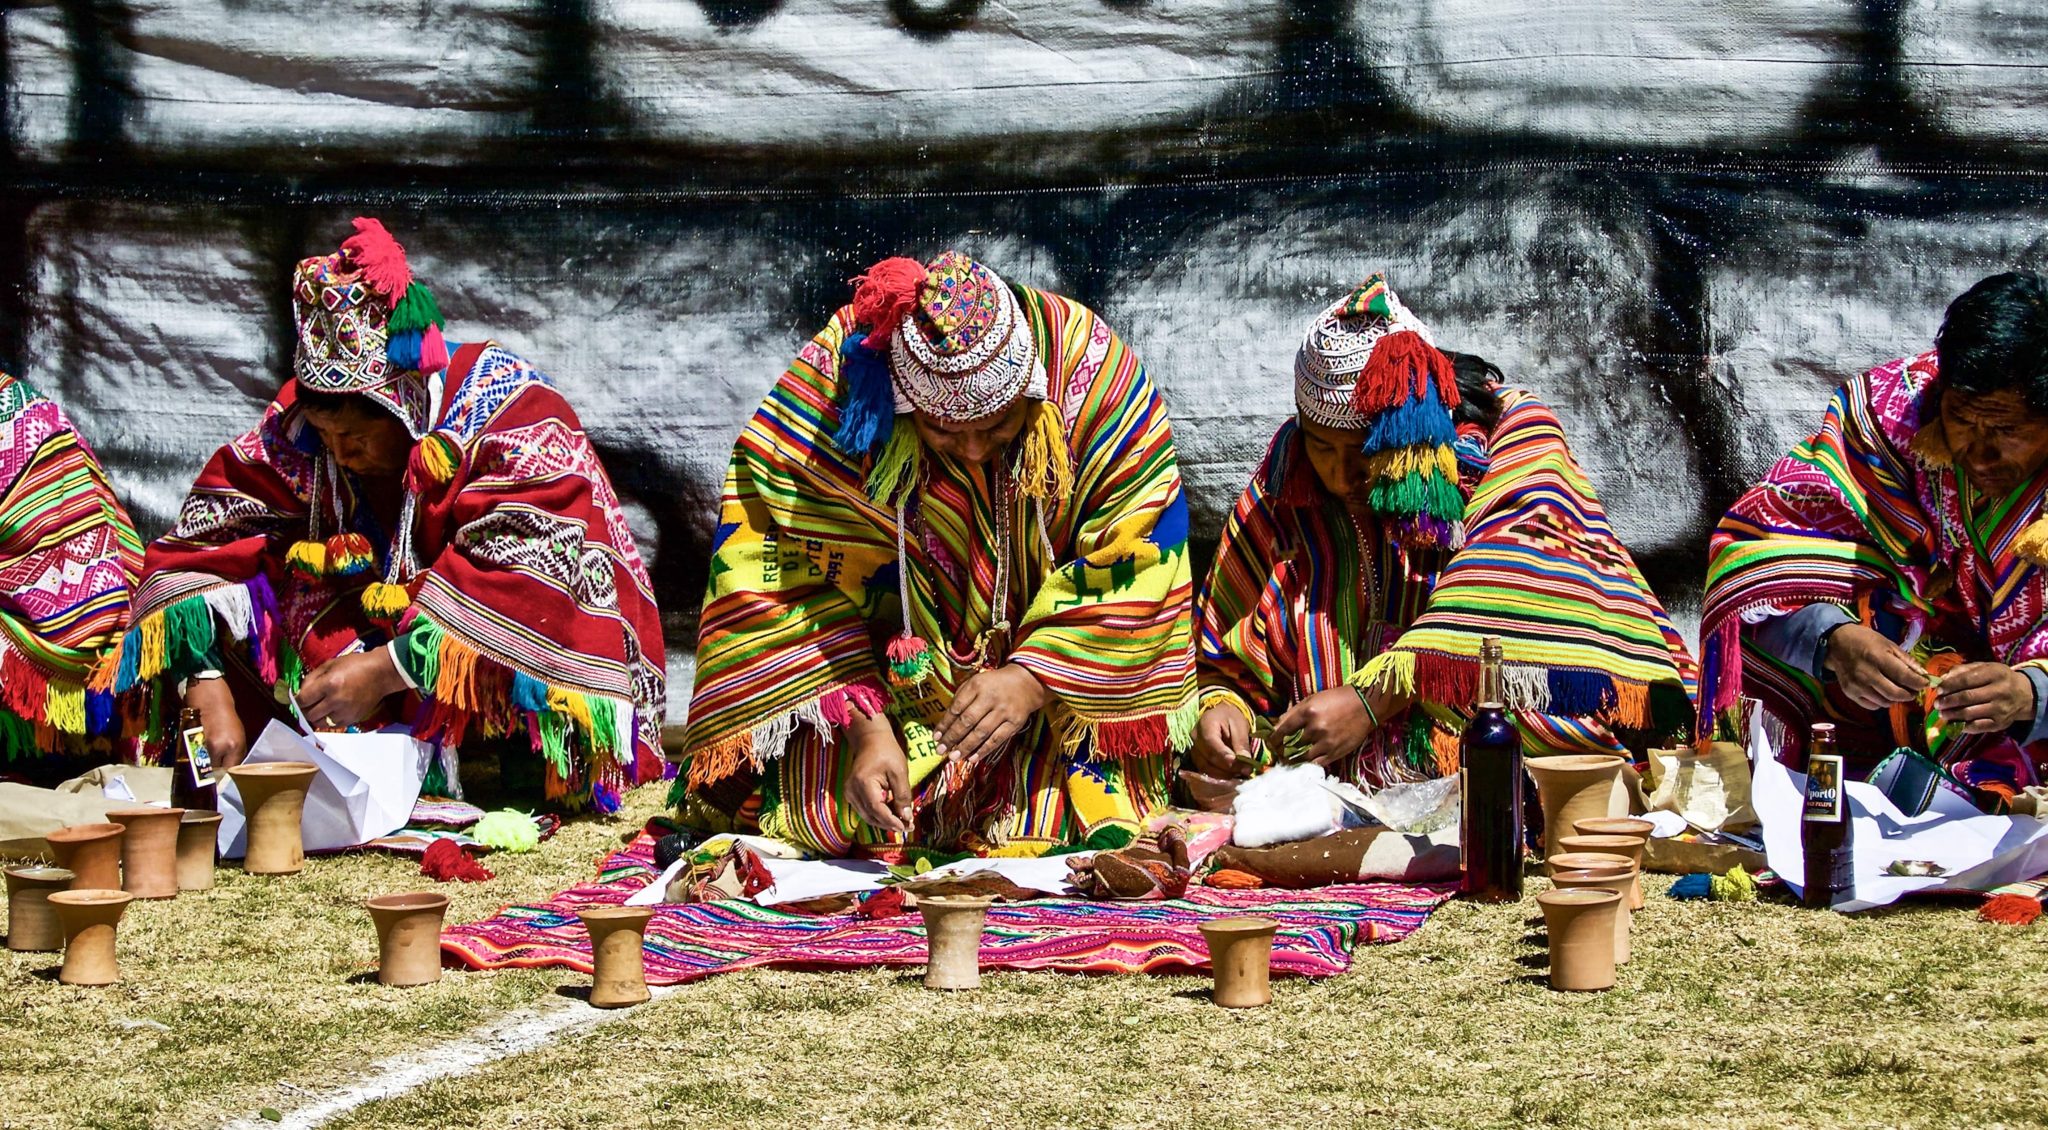 Tratamiento de las enfermedades psicomaticas en la cultura andina - Chamanismo